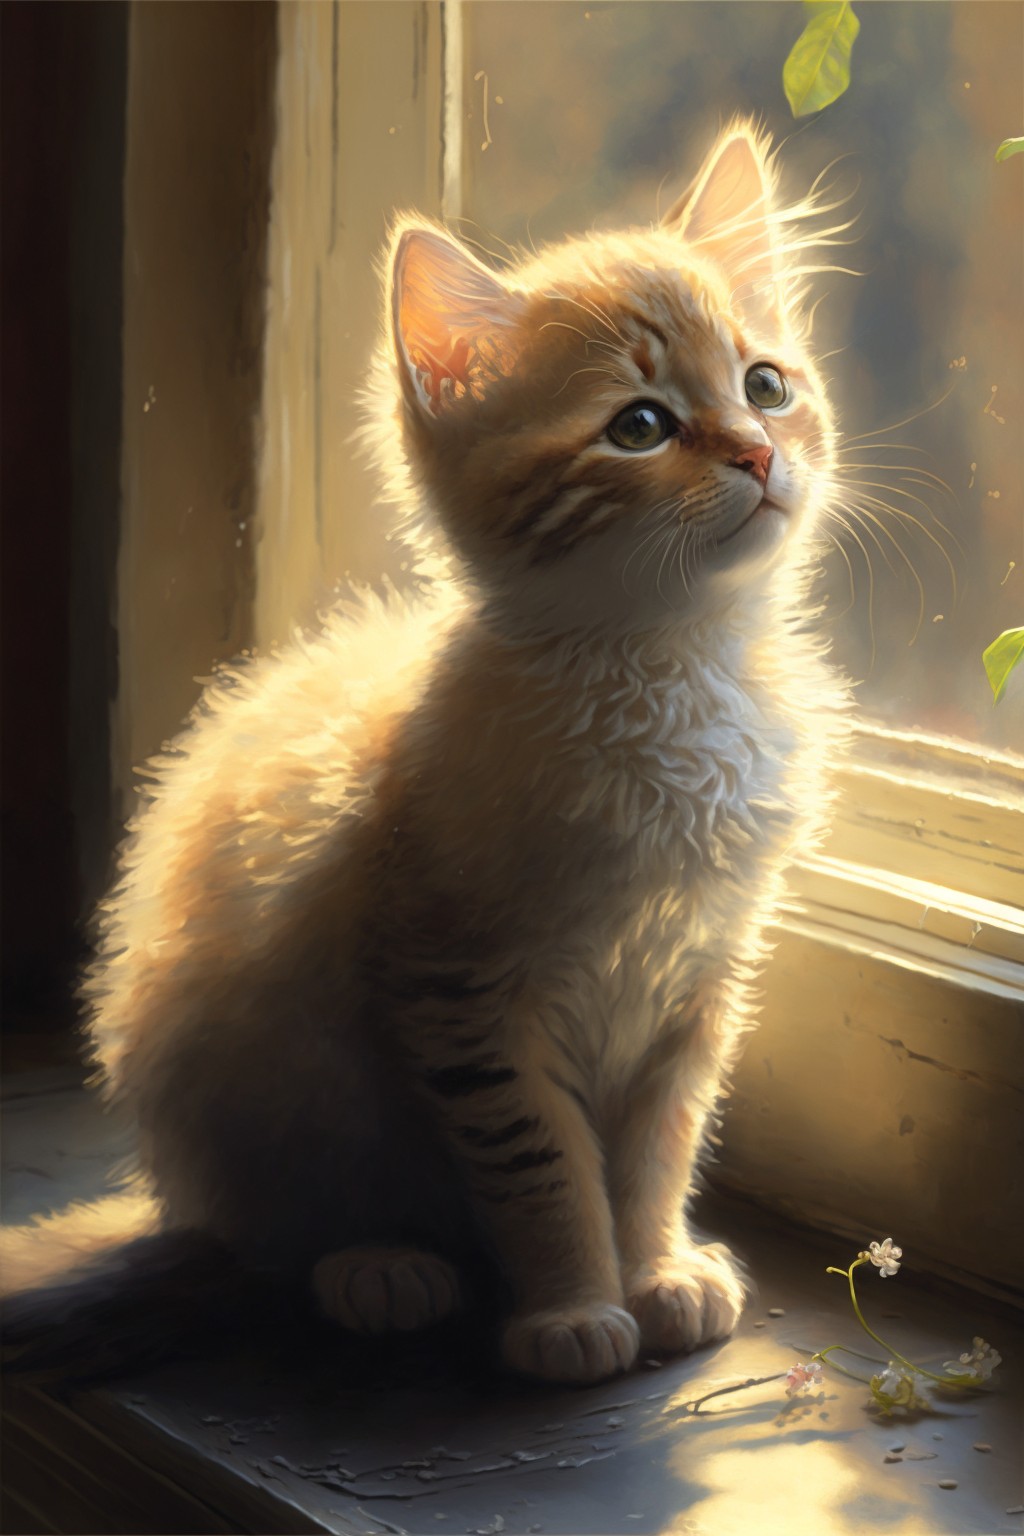 cute kitten by the window in the sun